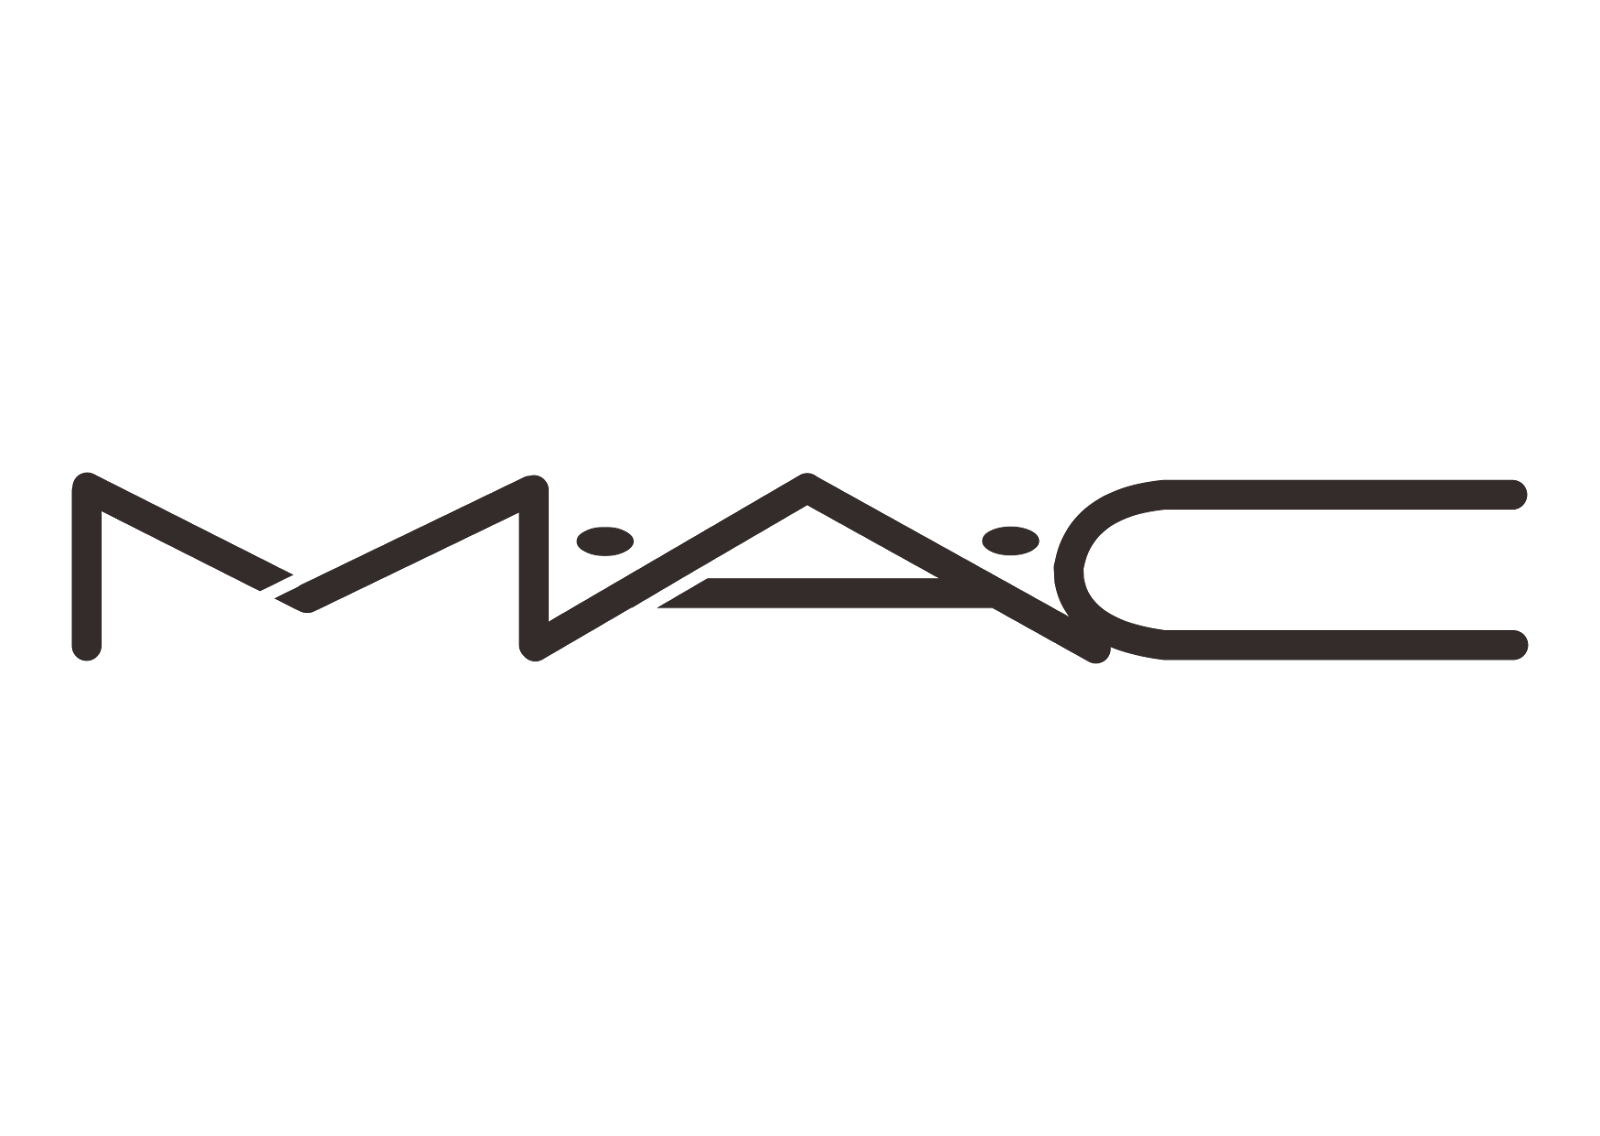 Mac Cosmetics Logos